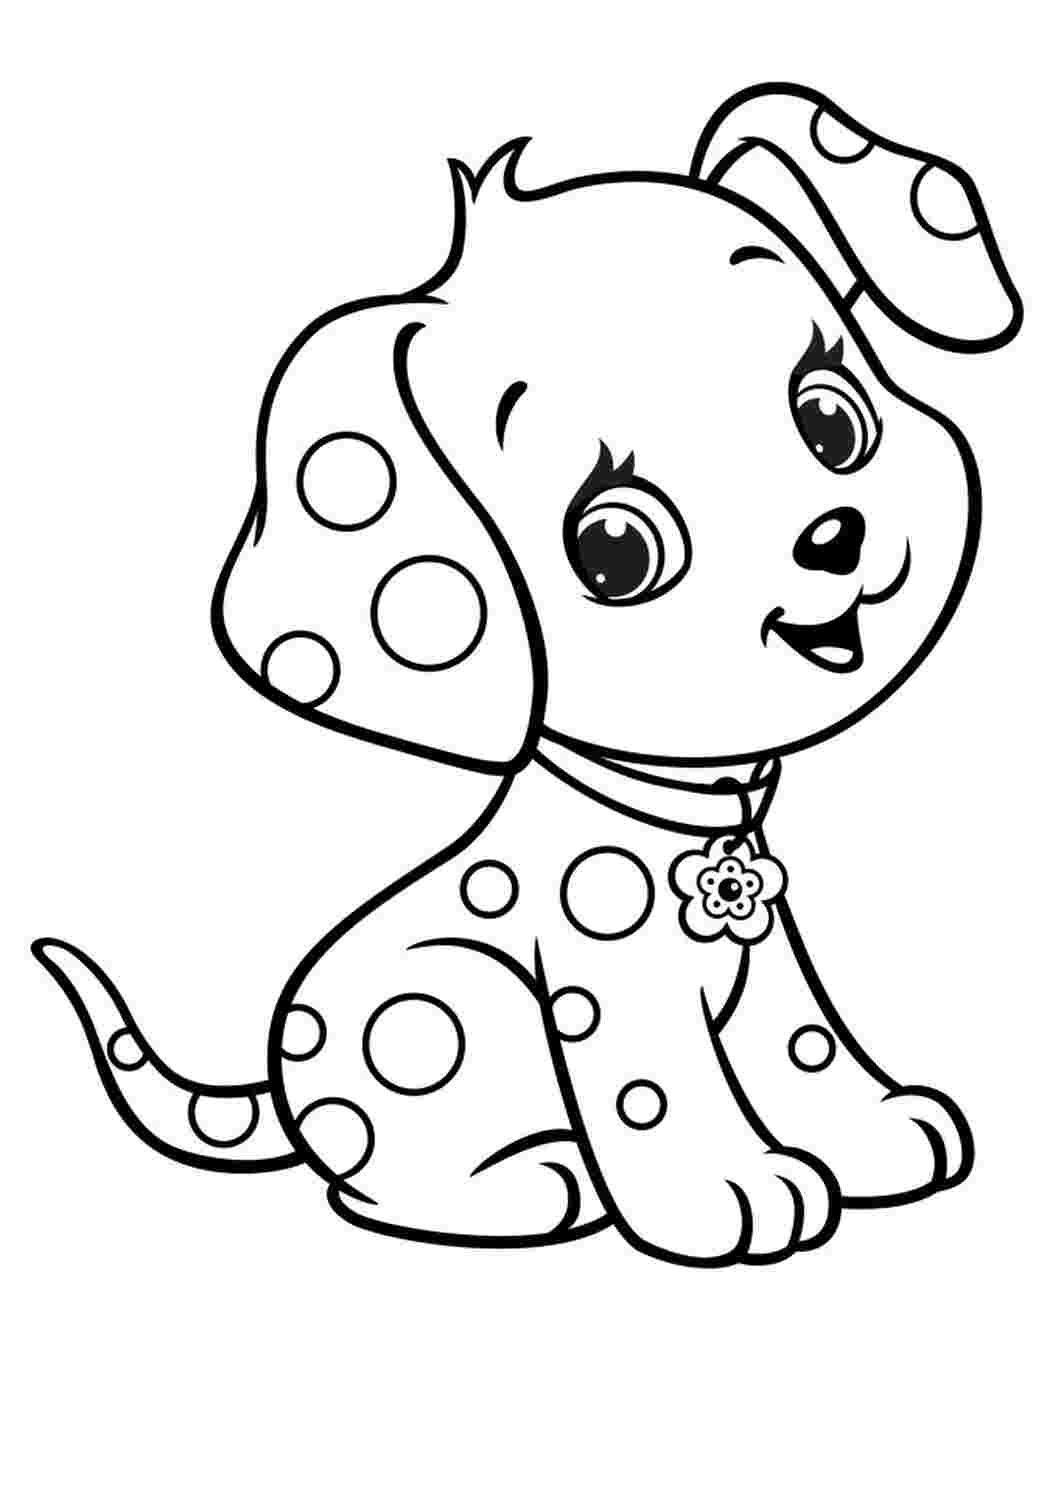 Раскраски Собака друг человека. Домашние животные раскраски с собаками и щенками для девочек и мальчиков.